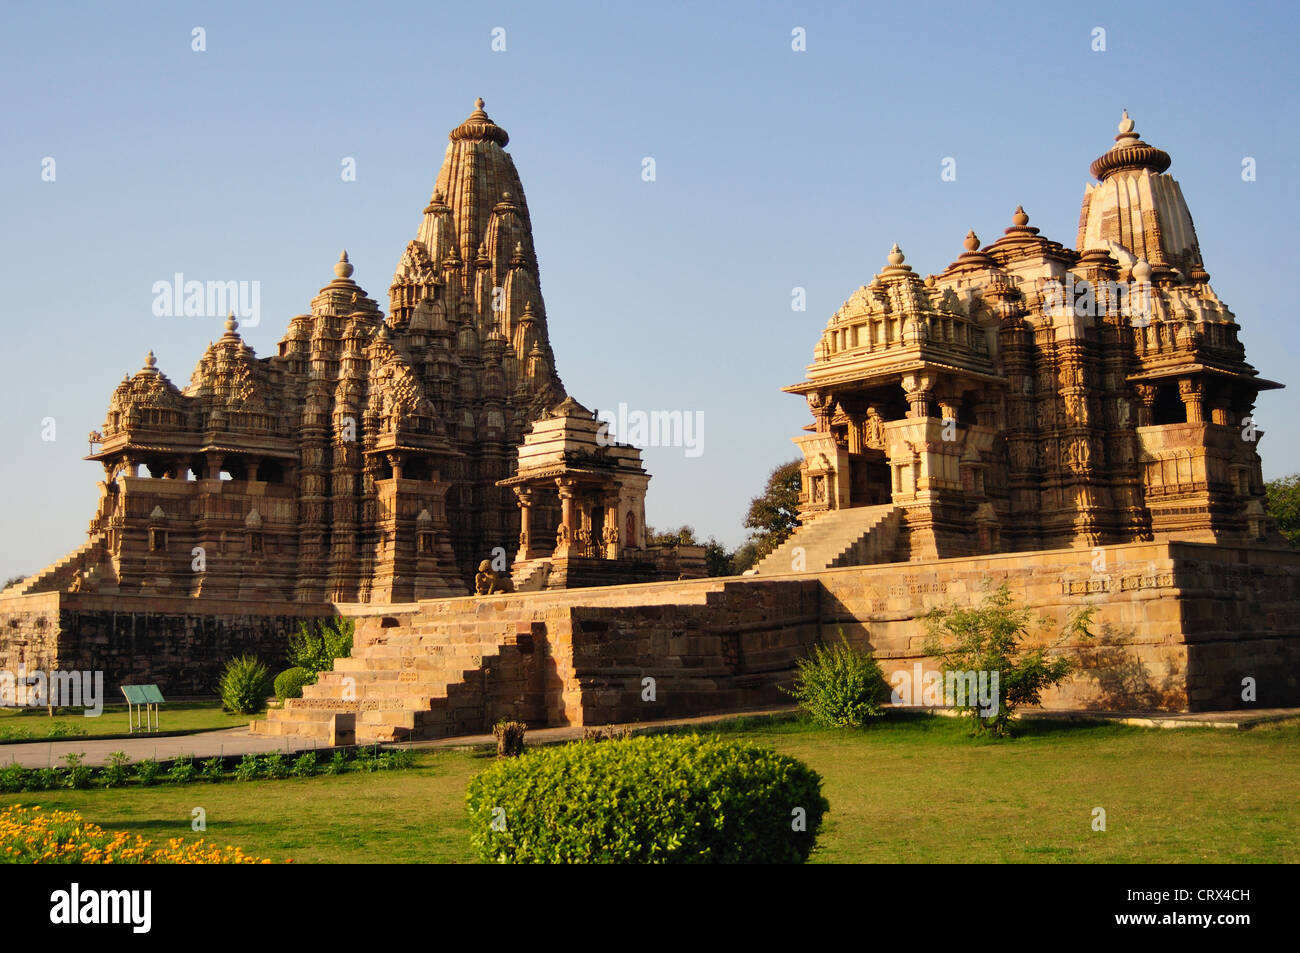 Links nach rechts - Kandariya Mahadeva Tempel, Shiva-Tempel und Jagdambi Devi Tempel Fassade Khajuraho Madya Pradesh, Indien Stockfoto